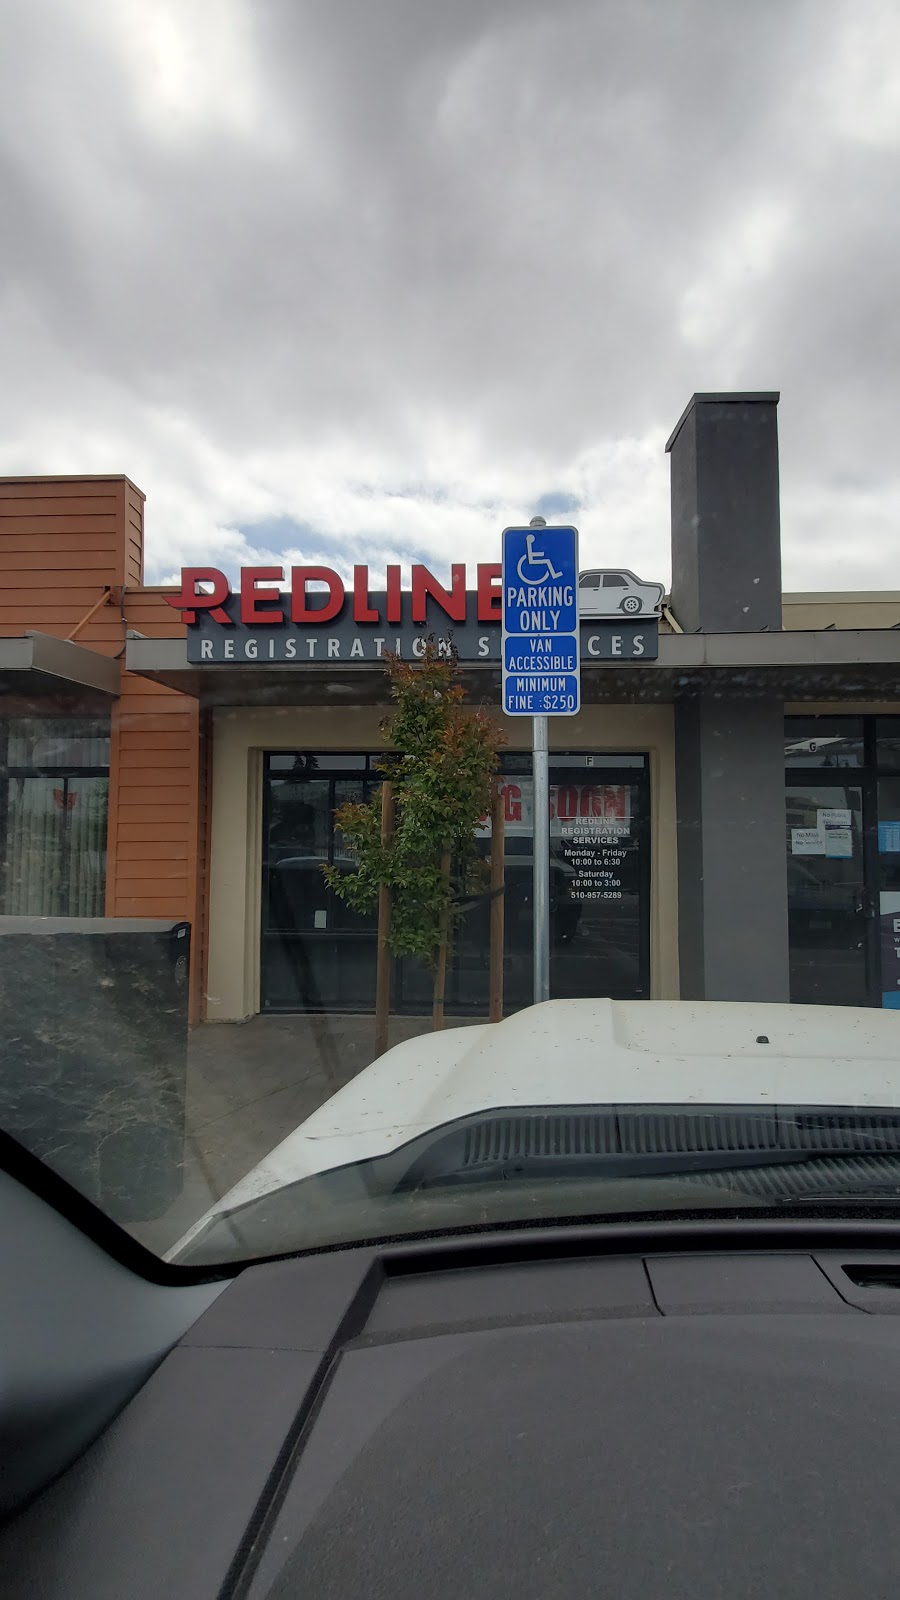 Redline Registration Services | 646 Hegenberger Rd Suite F, Oakland, CA 94621, USA | Phone: (510) 957-5289